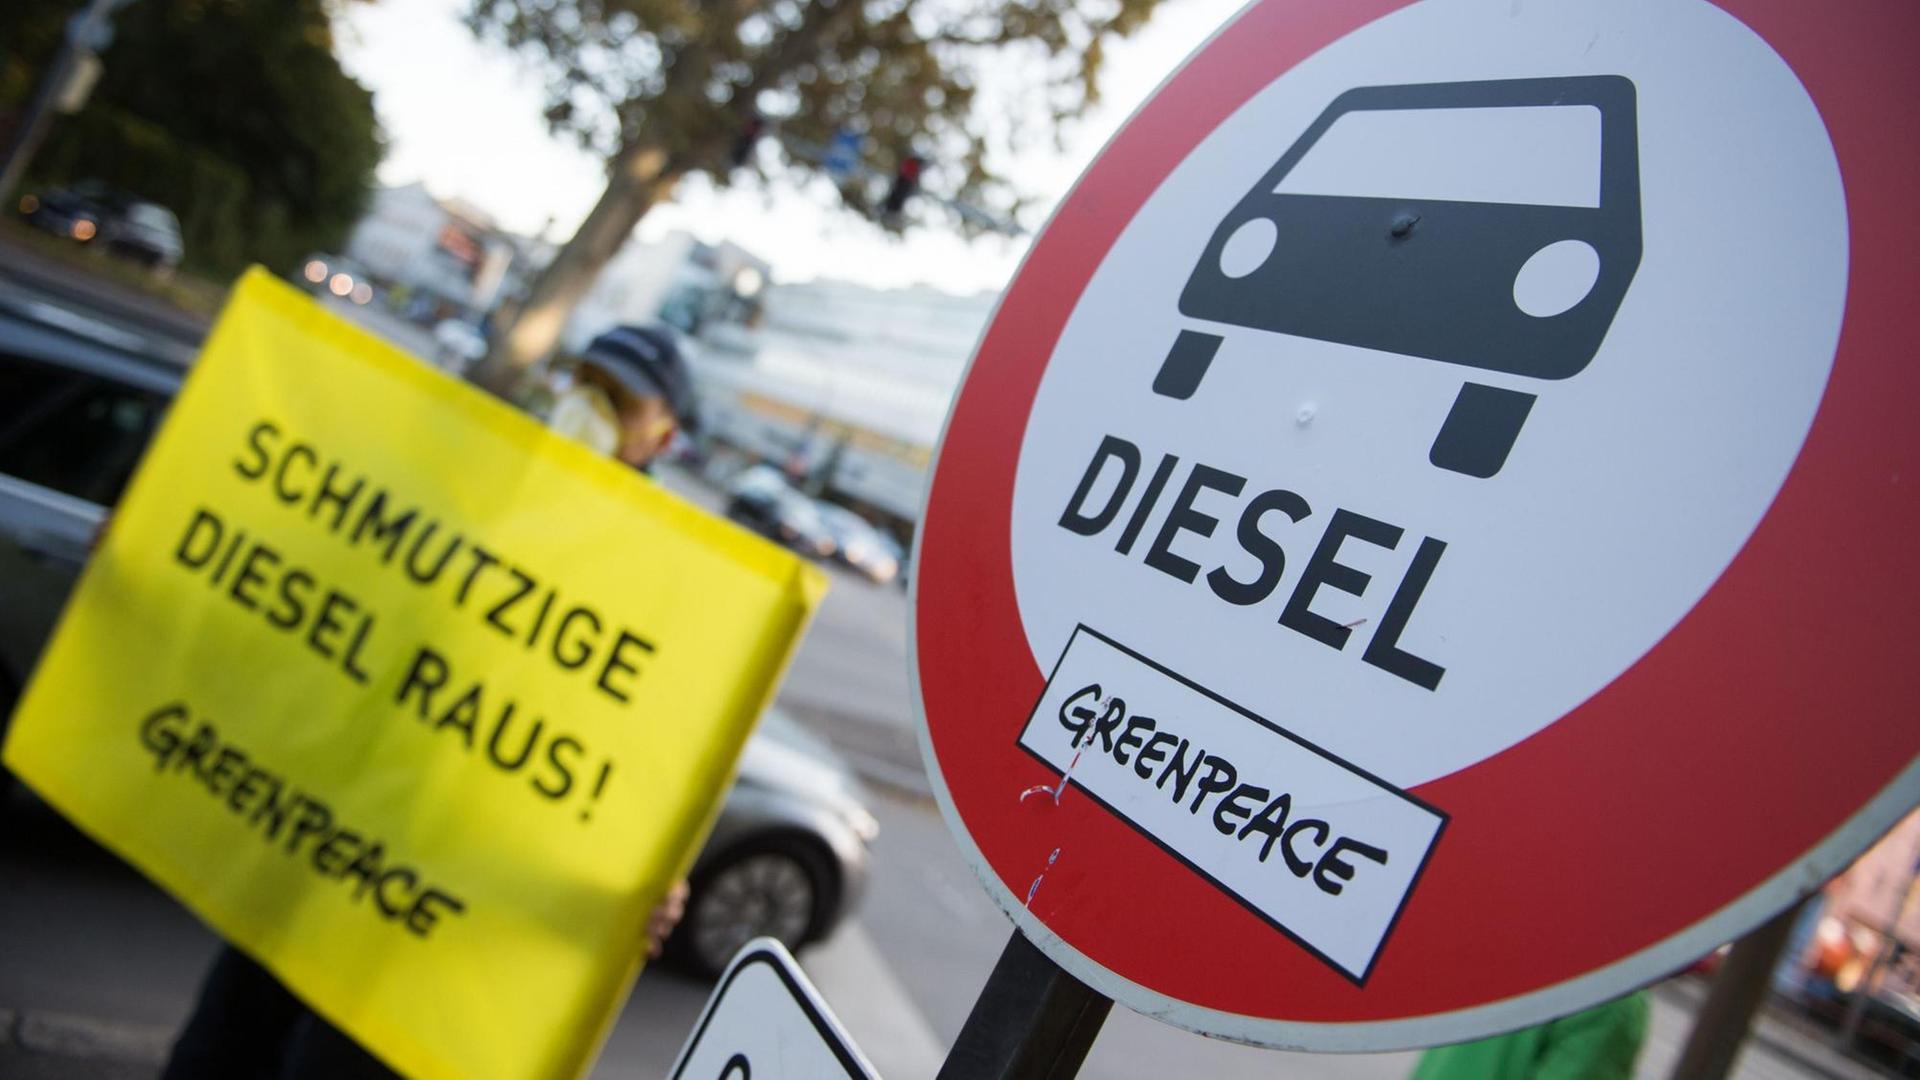 Schild mit der Aufschrift "Schmutzige Diesel raus!" neben einem "Verbotsschild für Dieselfahrzeuge", das von Greenpeace für die Aktion aufgestellt wurde.